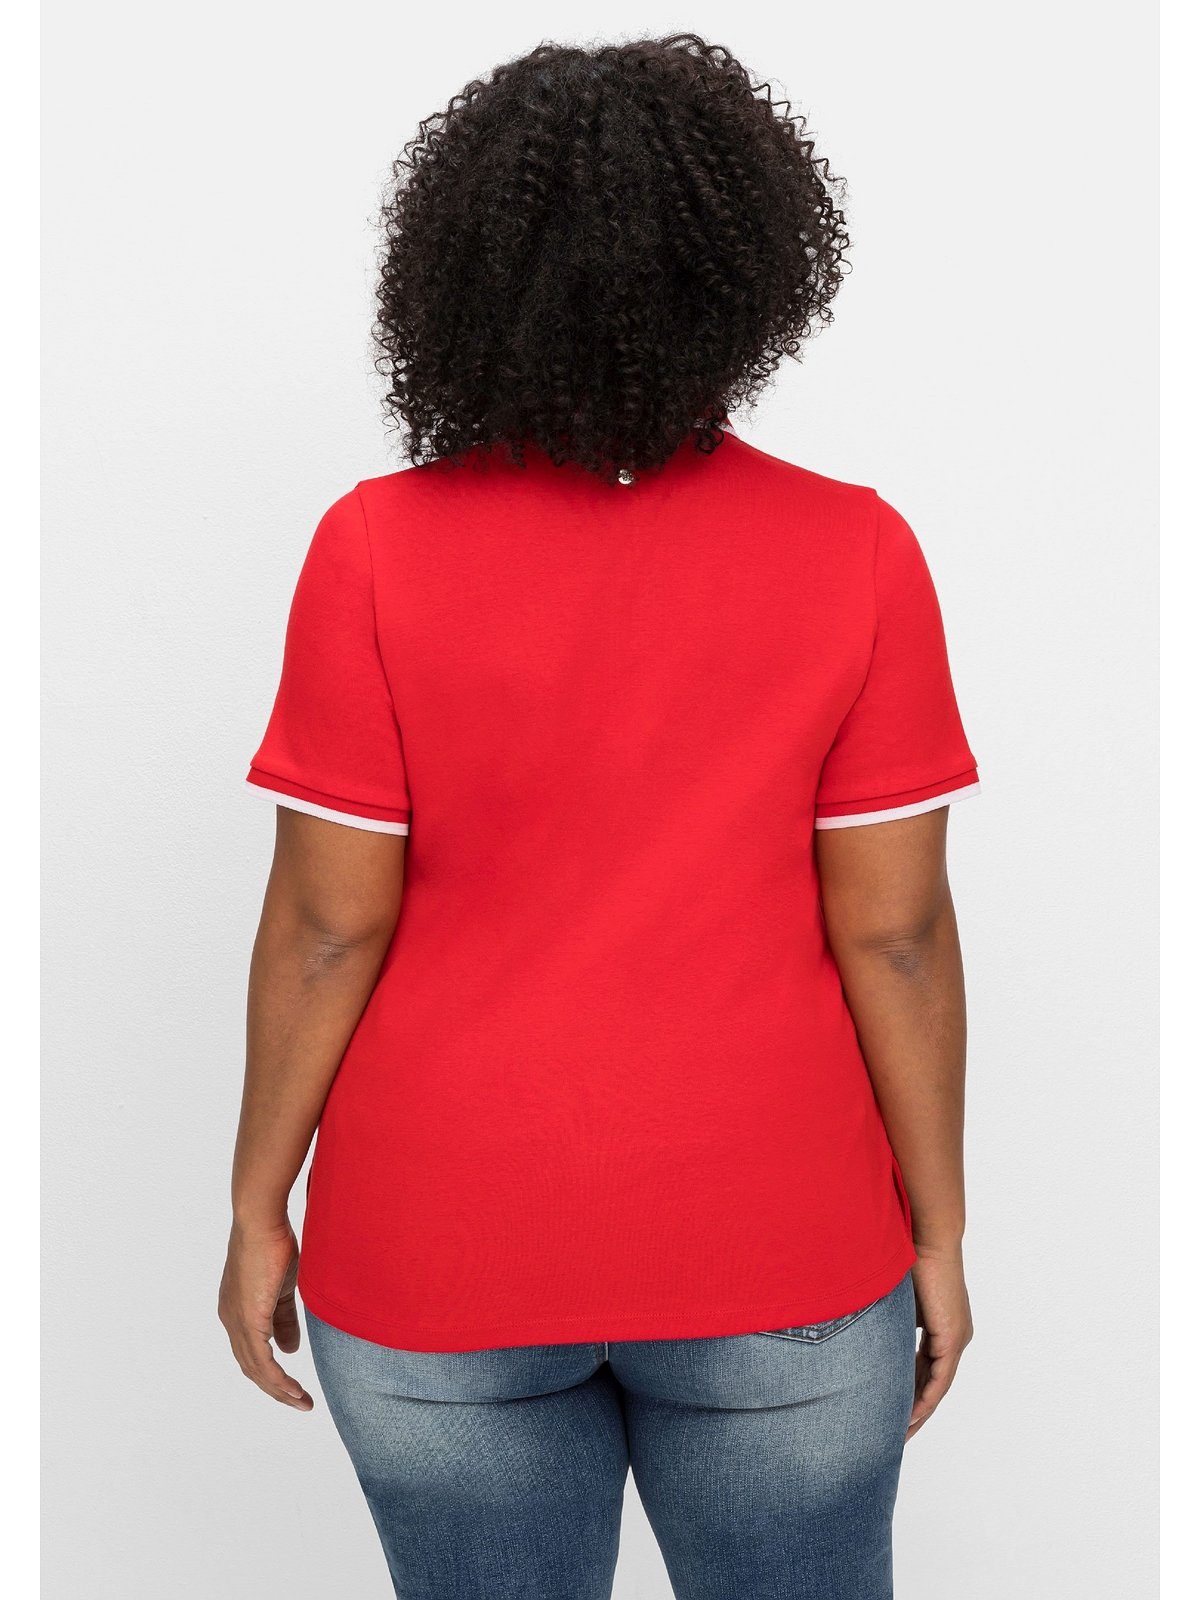 Sheego T-Shirt Große Größen Kontrastkanten, tailliert mit leicht